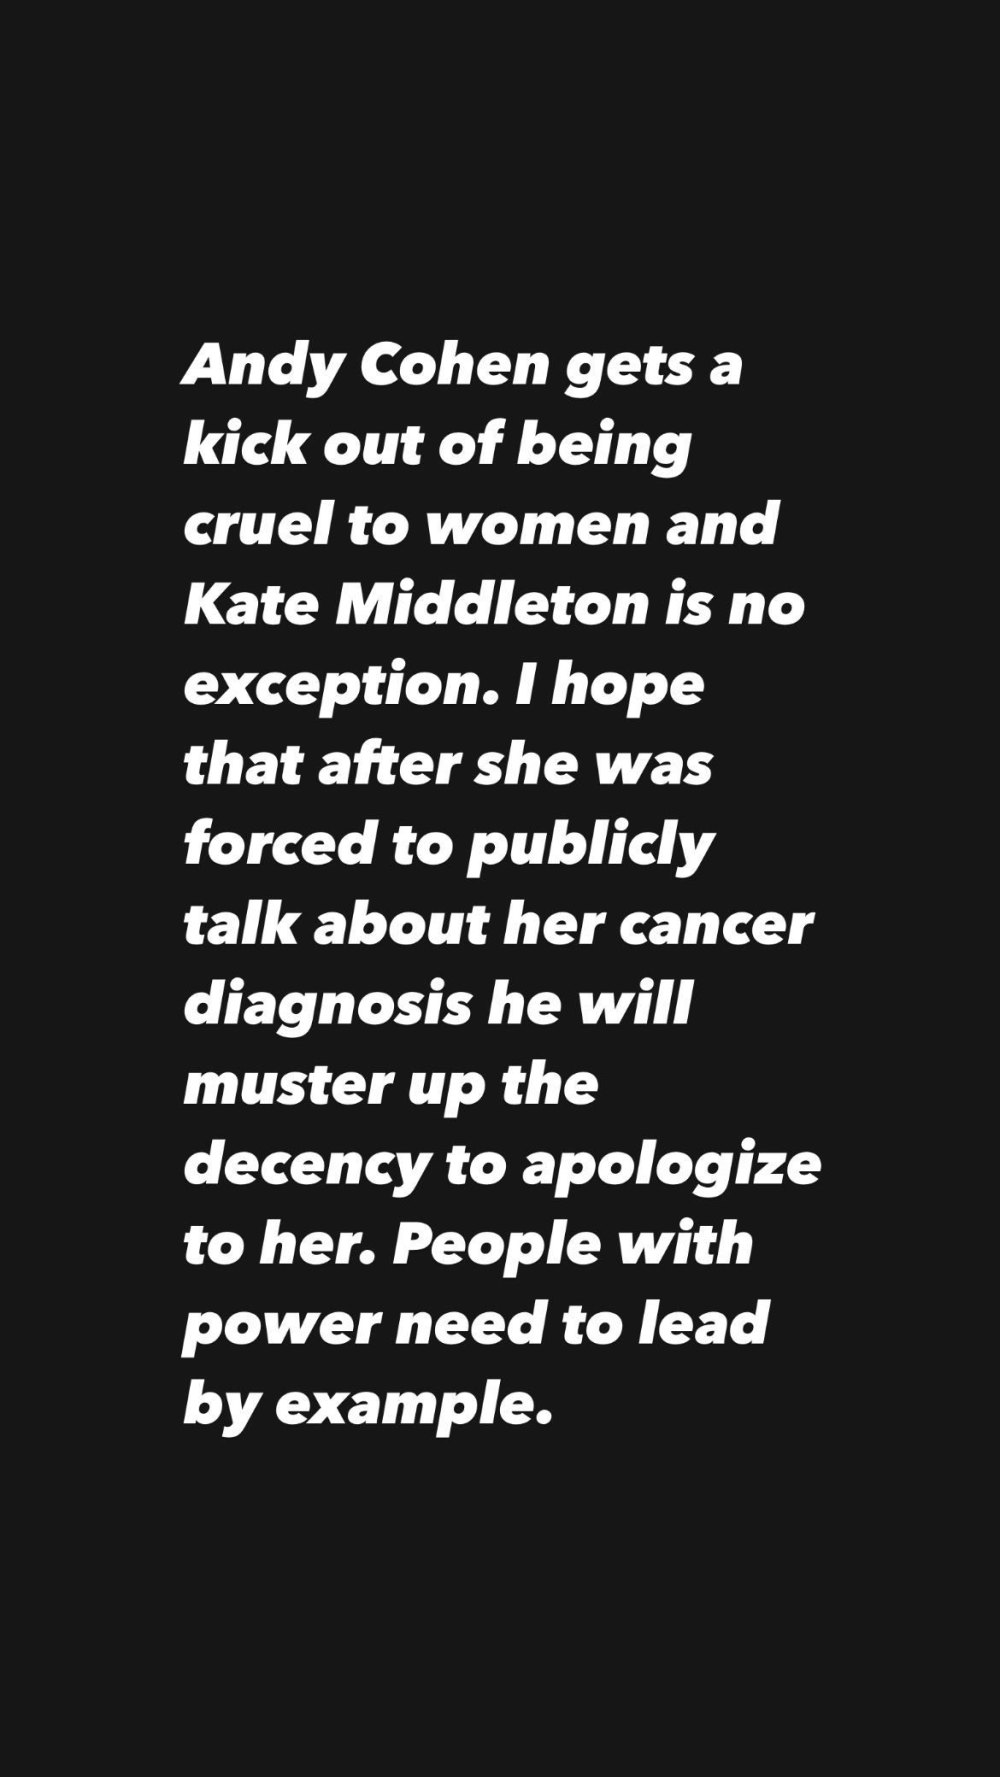 RHONY Alum Leah McSweeney critica Andy Cohen por fazer piadas sobre Kate Middleton antes do diagnóstico de câncer